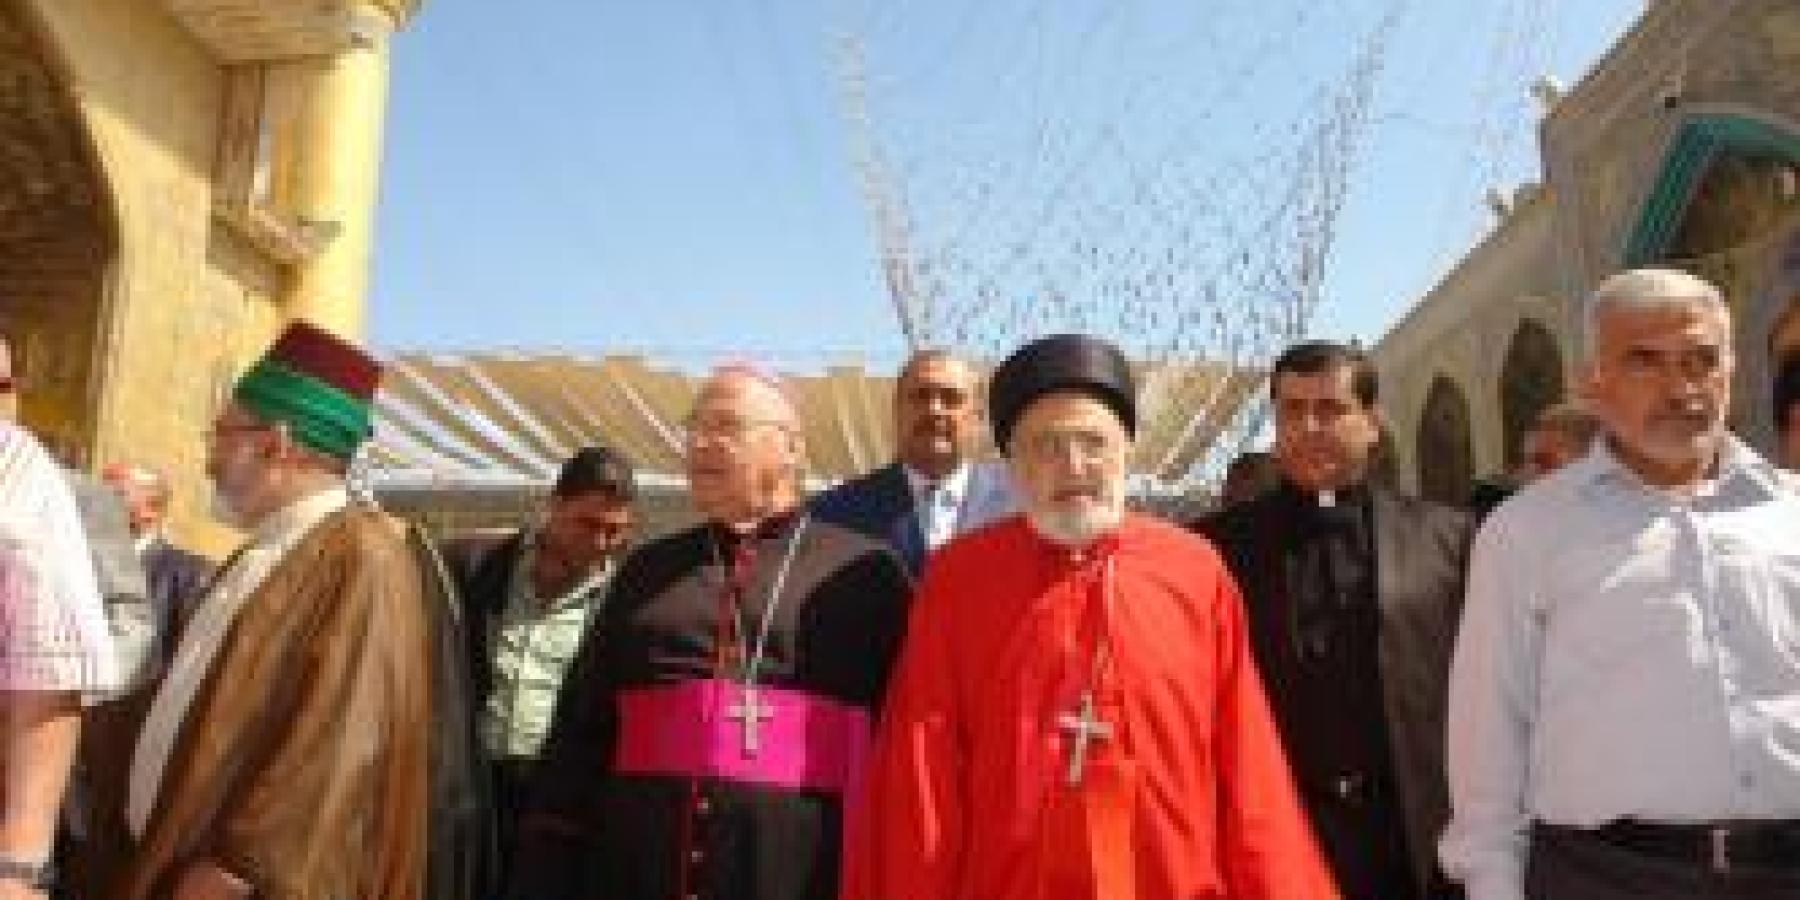 تشرف وفد الطوائف المسيحية في العراق بزيارة مرقد امير المؤمنين (عليه السلام)